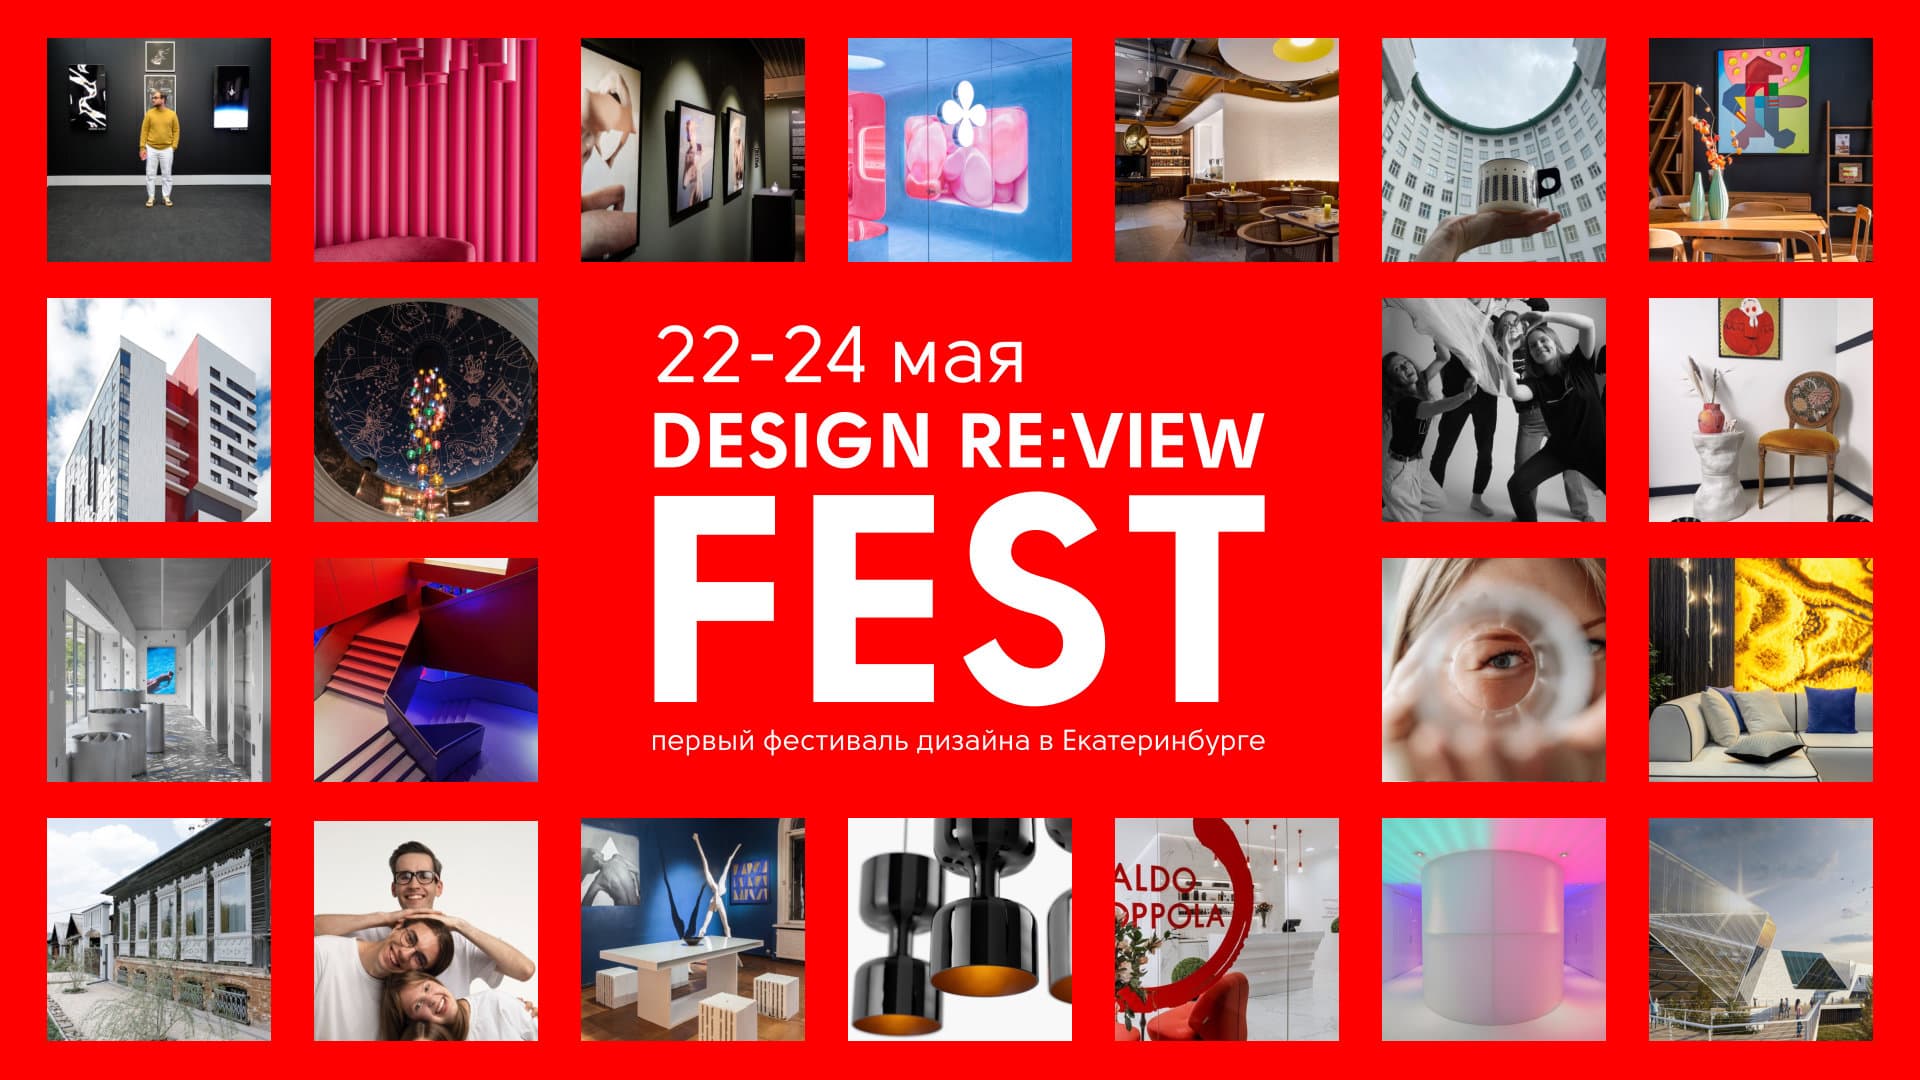 Дизайн с уральским акцентом: чего ждать от фестиваля Design Re:view FEST